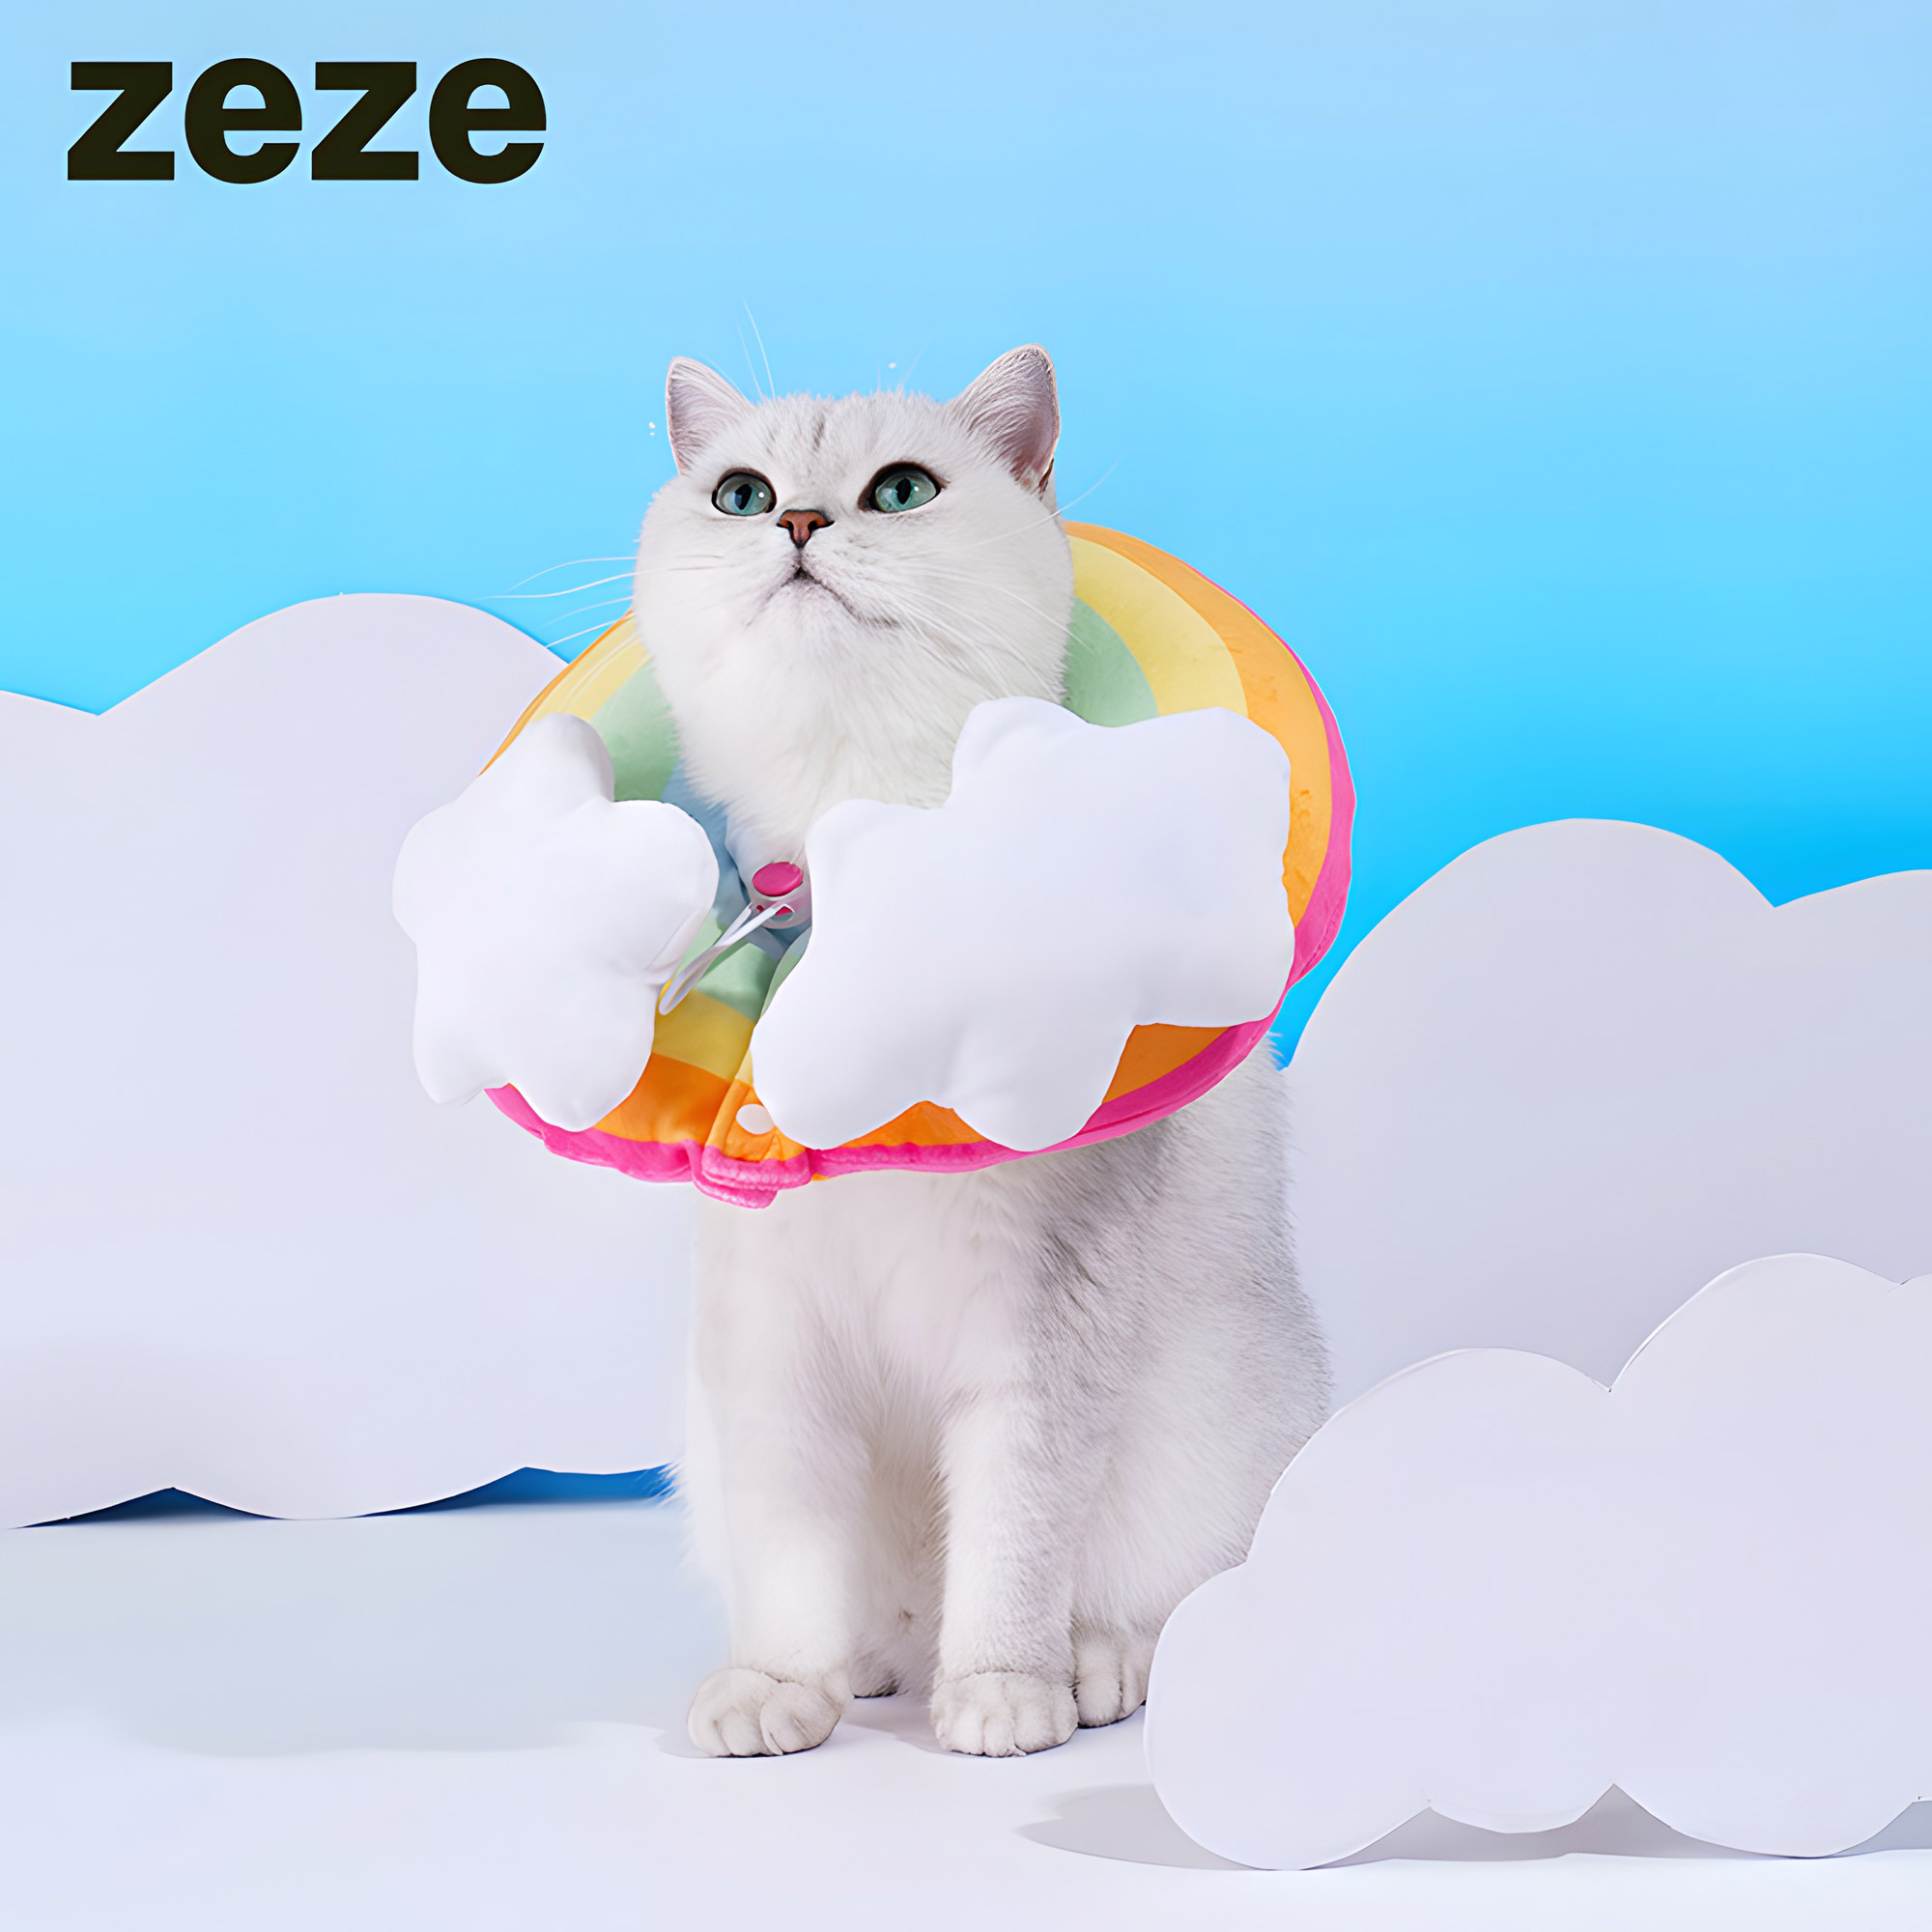 zeze Rainbow Collar ปลอกคอสายรุ้ง ปลอกคอกันแมวเลีย สีรุ้ง พร้อมก้อนเมฆ สีเฉดสดใส สวย นุ่ม ใส่สบาย ป้องกันแมวเลียแผล